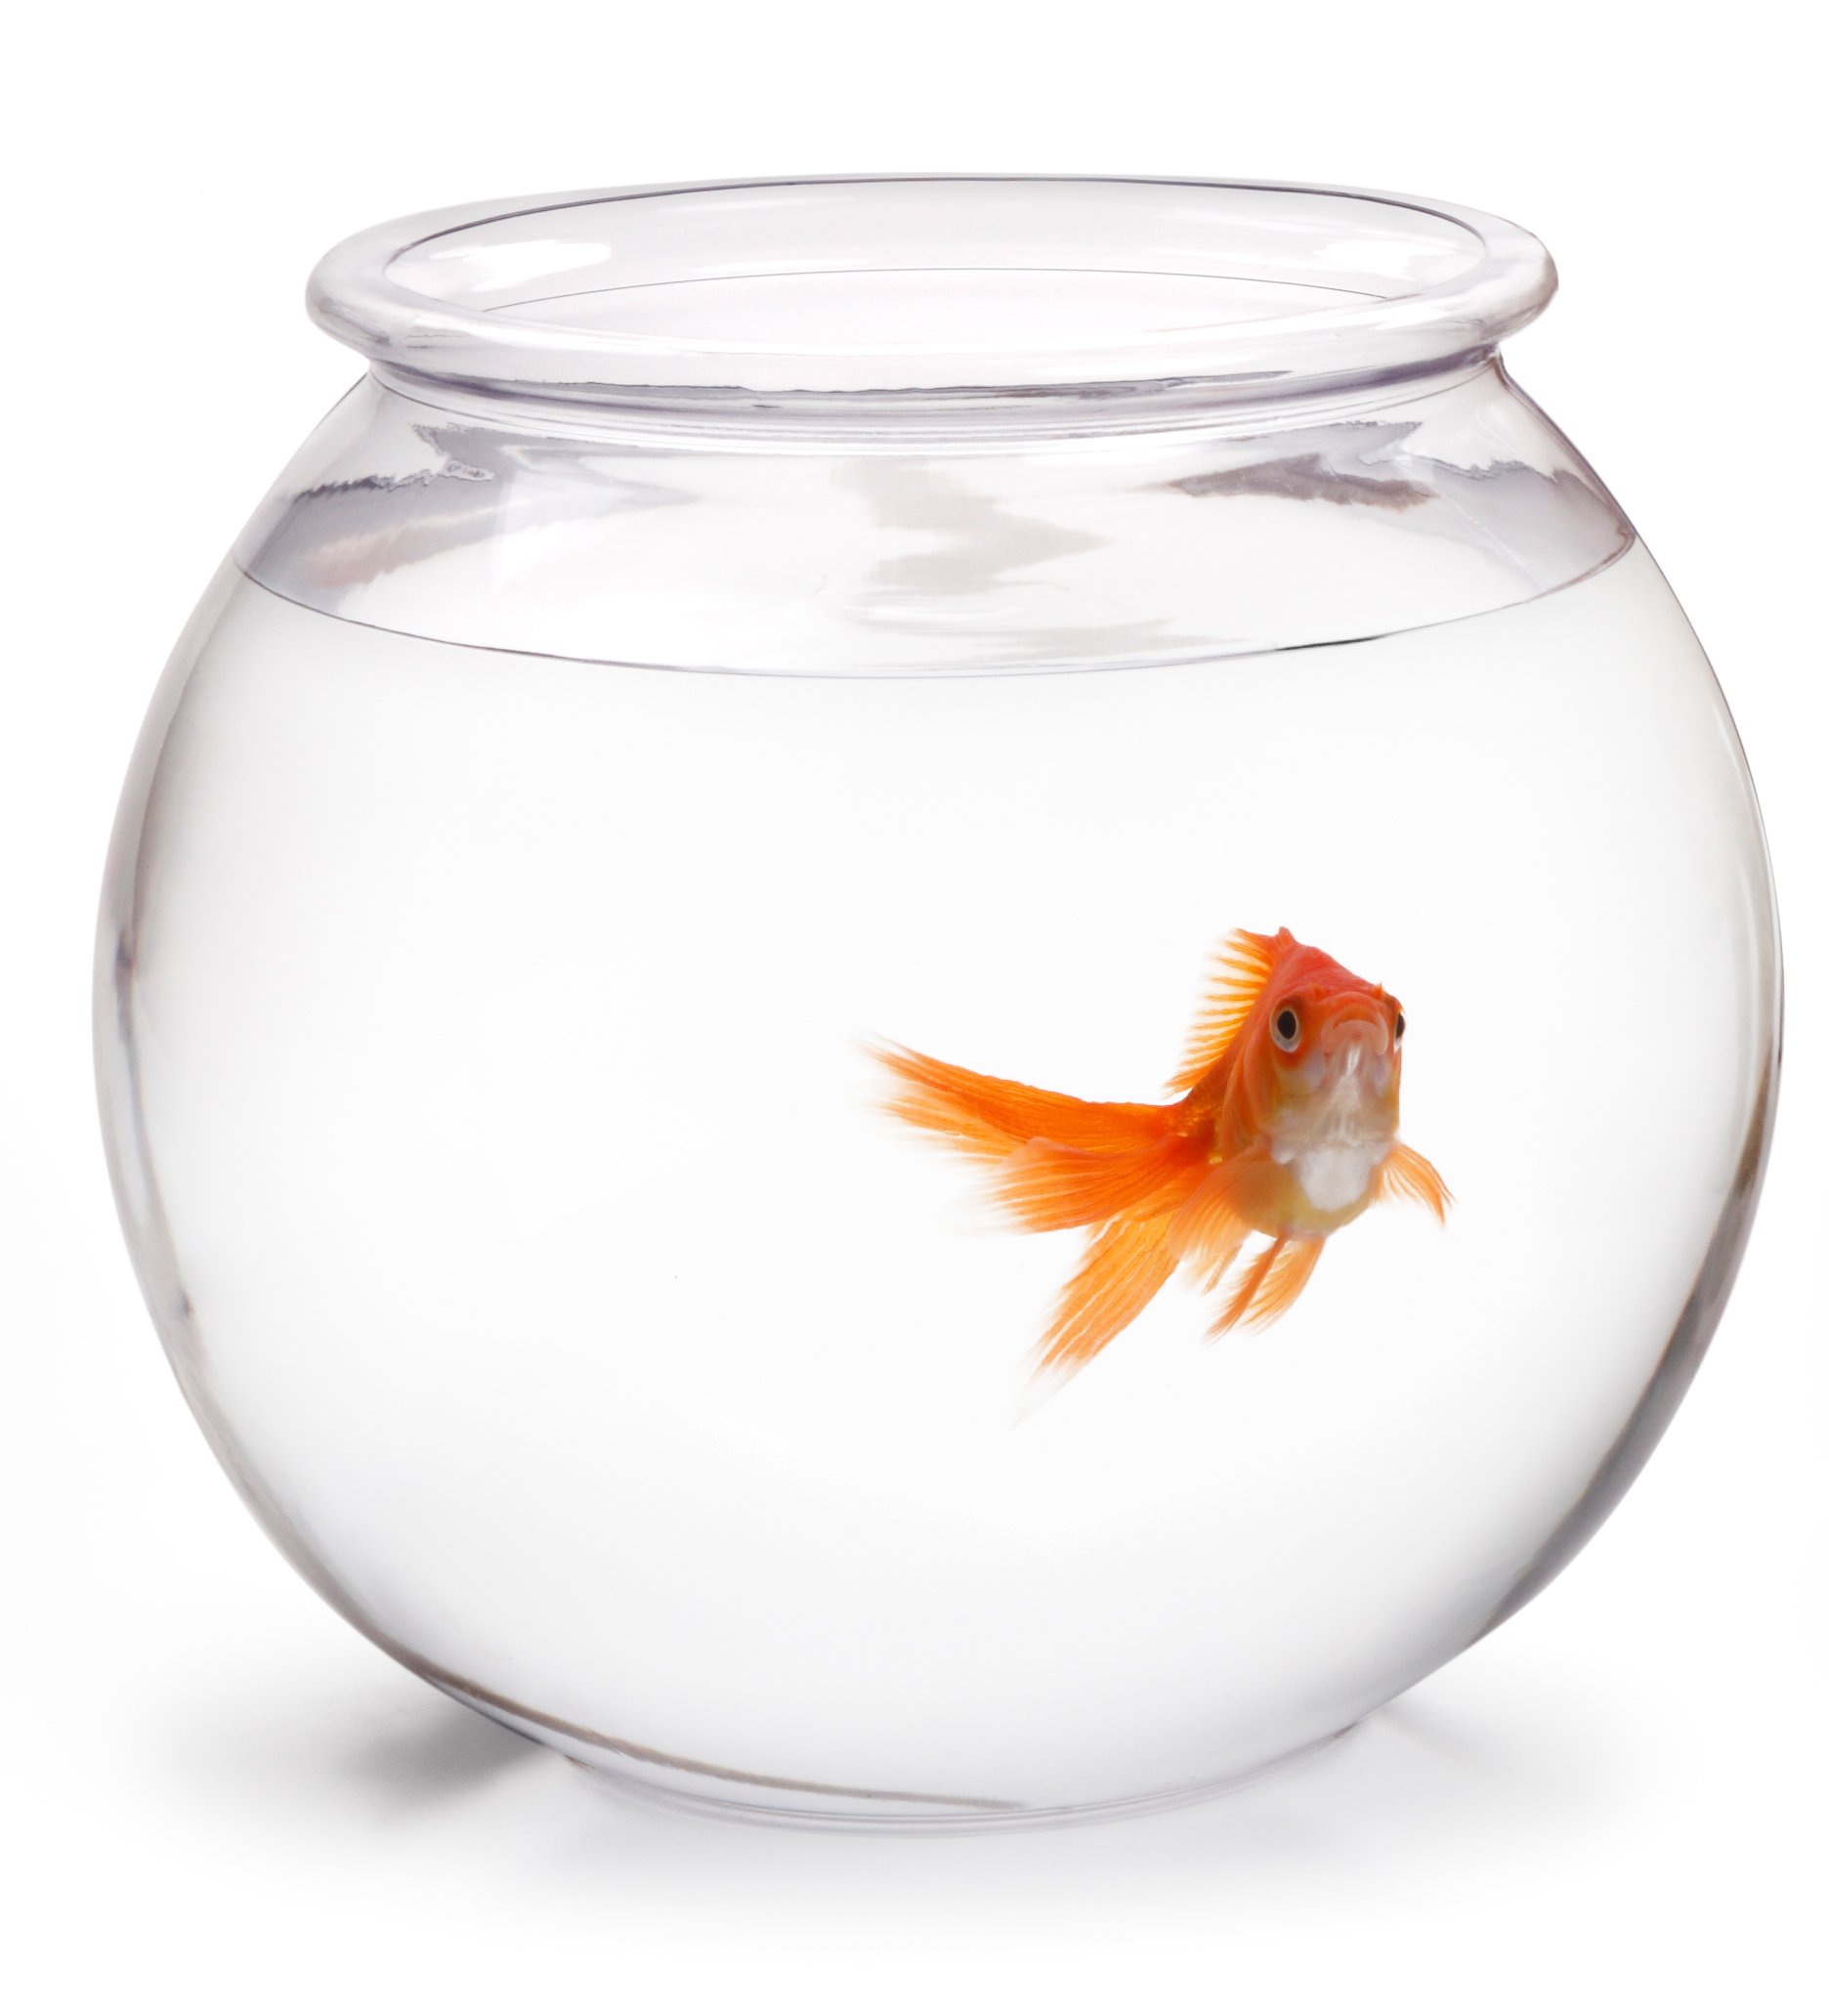 Снится аквариум с рыбками женщине. Аквариум Gold Fish Bowl 17л оранжевый. Круглый аквариум с рыбками. Золотая рыбка в круглом аквариуме. Одна рыбка в круглом аквариуме.